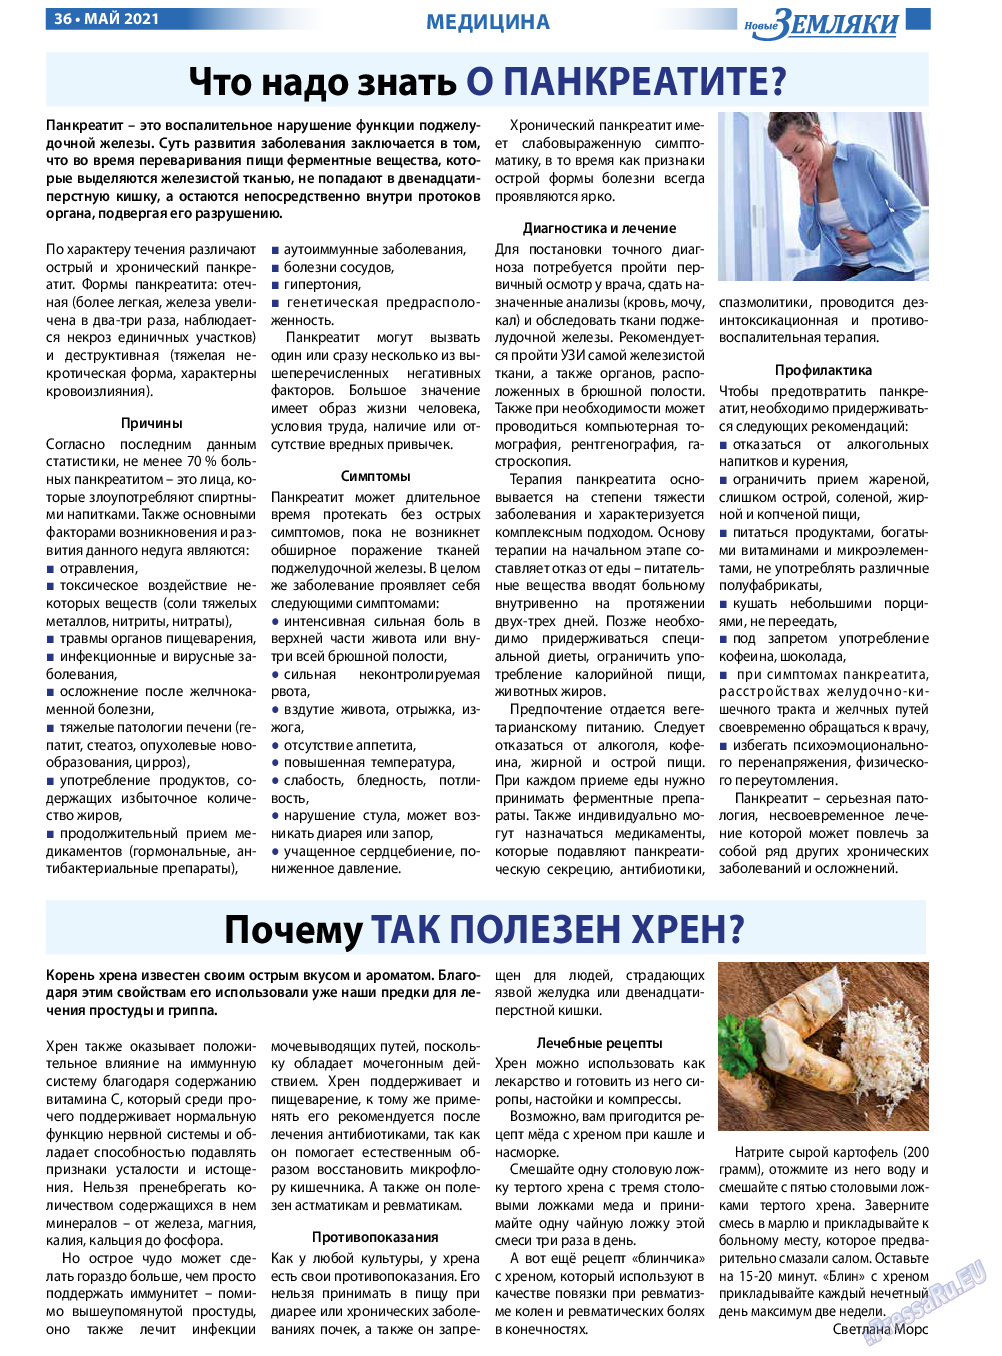 Новые Земляки, газета. 2021 №5 стр.36